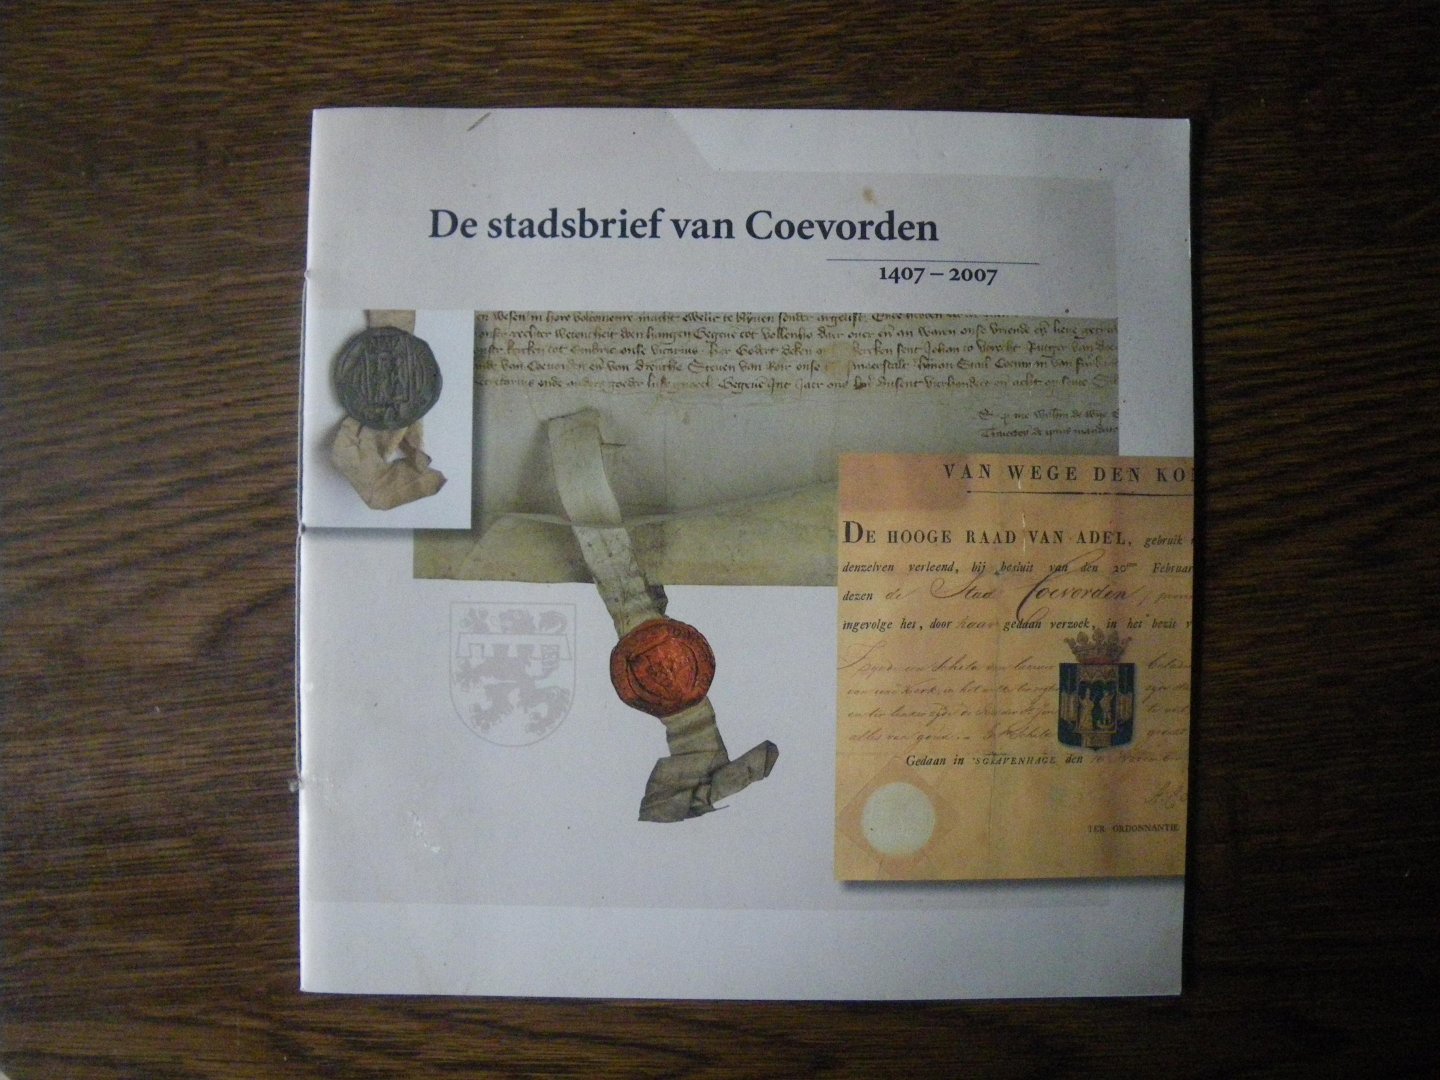 Kleis, Gerrit - De stadsbrief van Coevorden 1407-2007